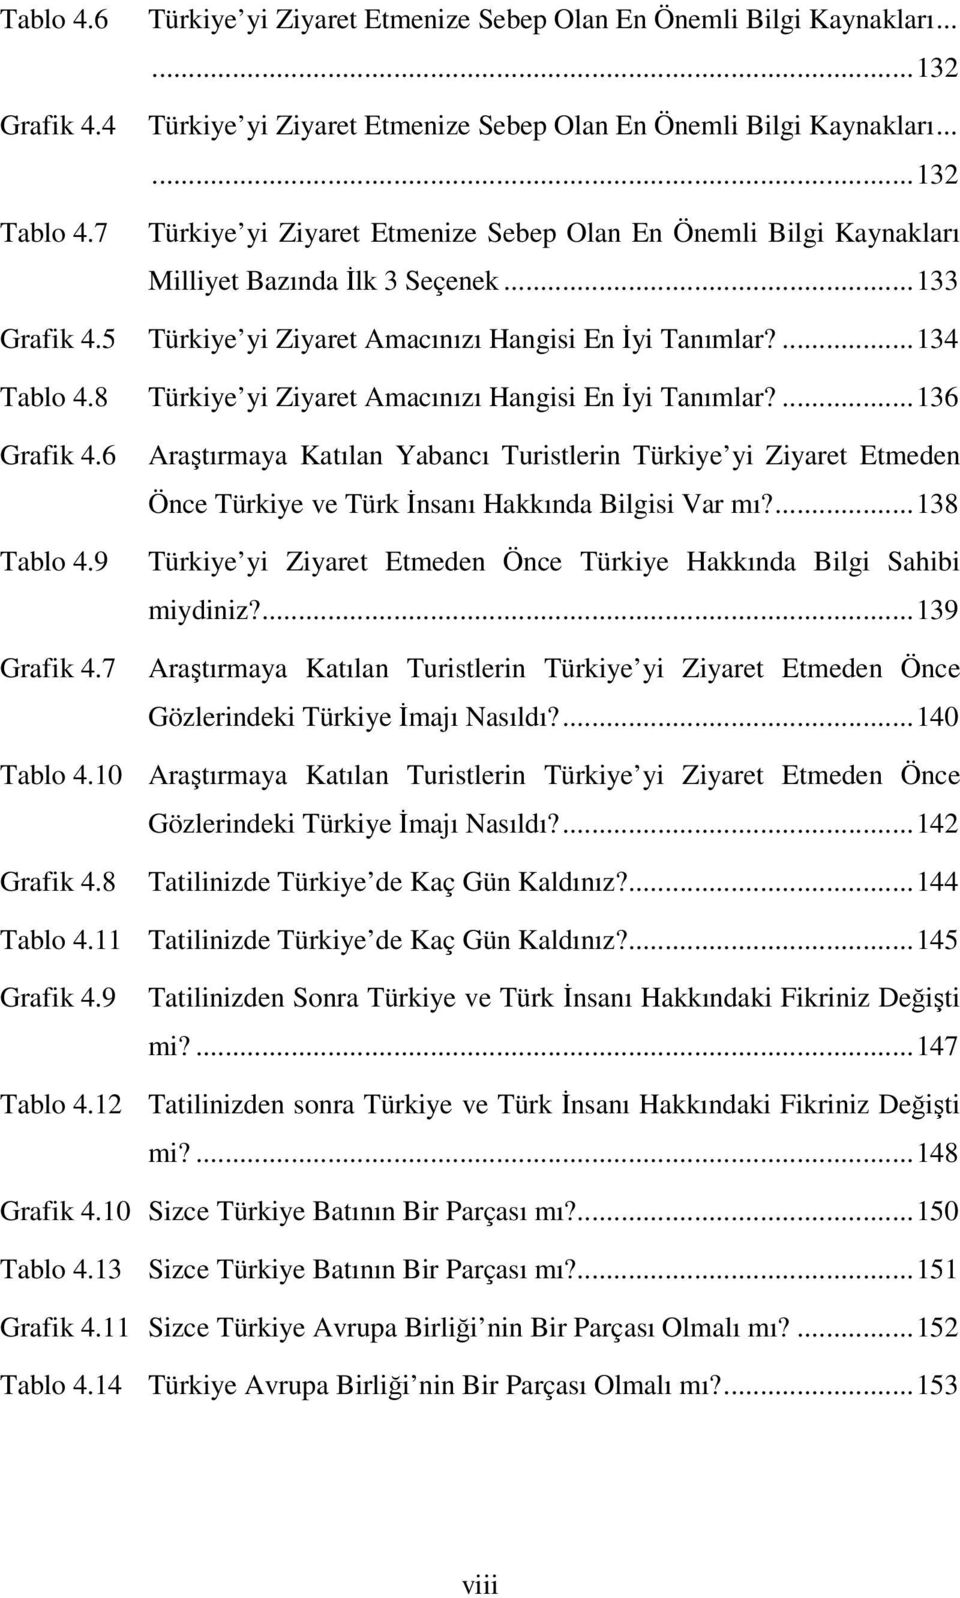 8 Türkiye yi Ziyaret Amacınızı Hangisi En İyi Tanımlar?...136 Grafik 4.6 Tablo 4.9 Grafik 4.